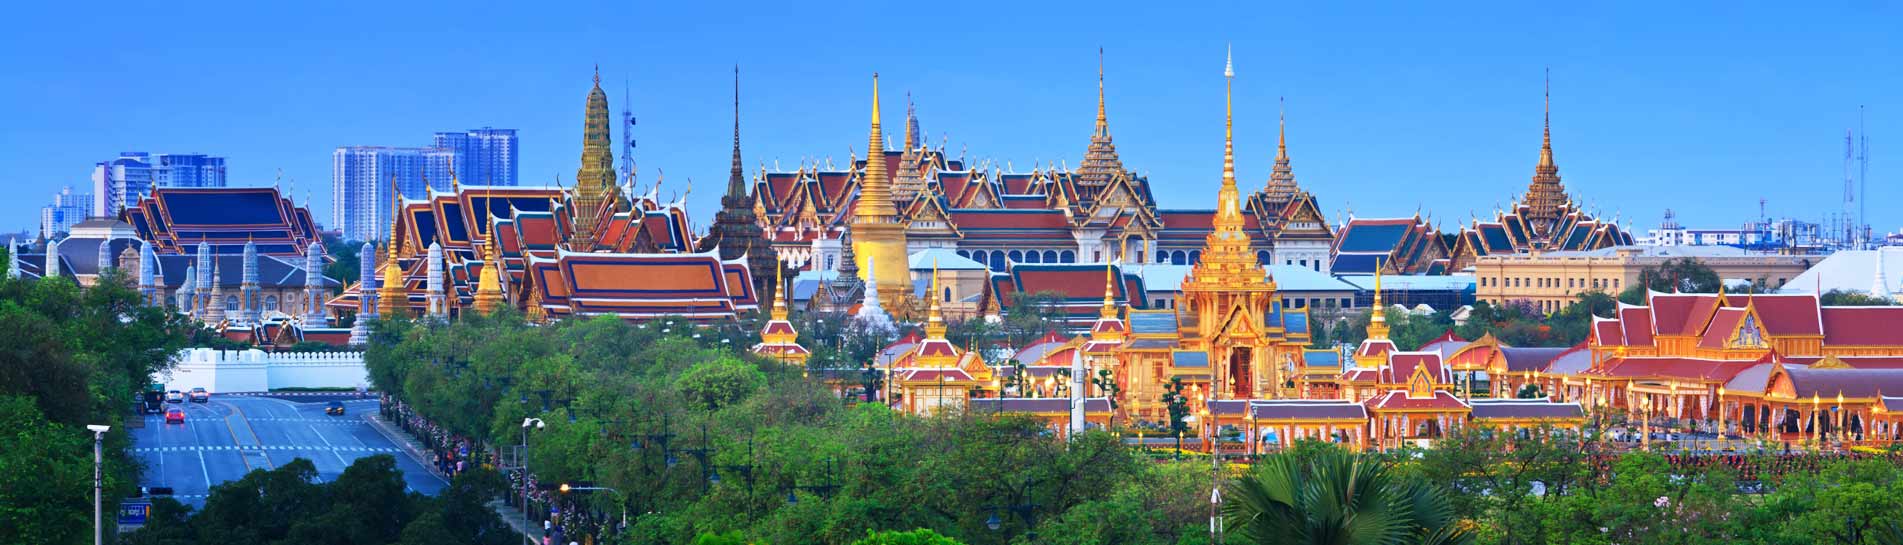 טיסות לתאילנד: כל מה שצריך לדעת לפני שממריאים